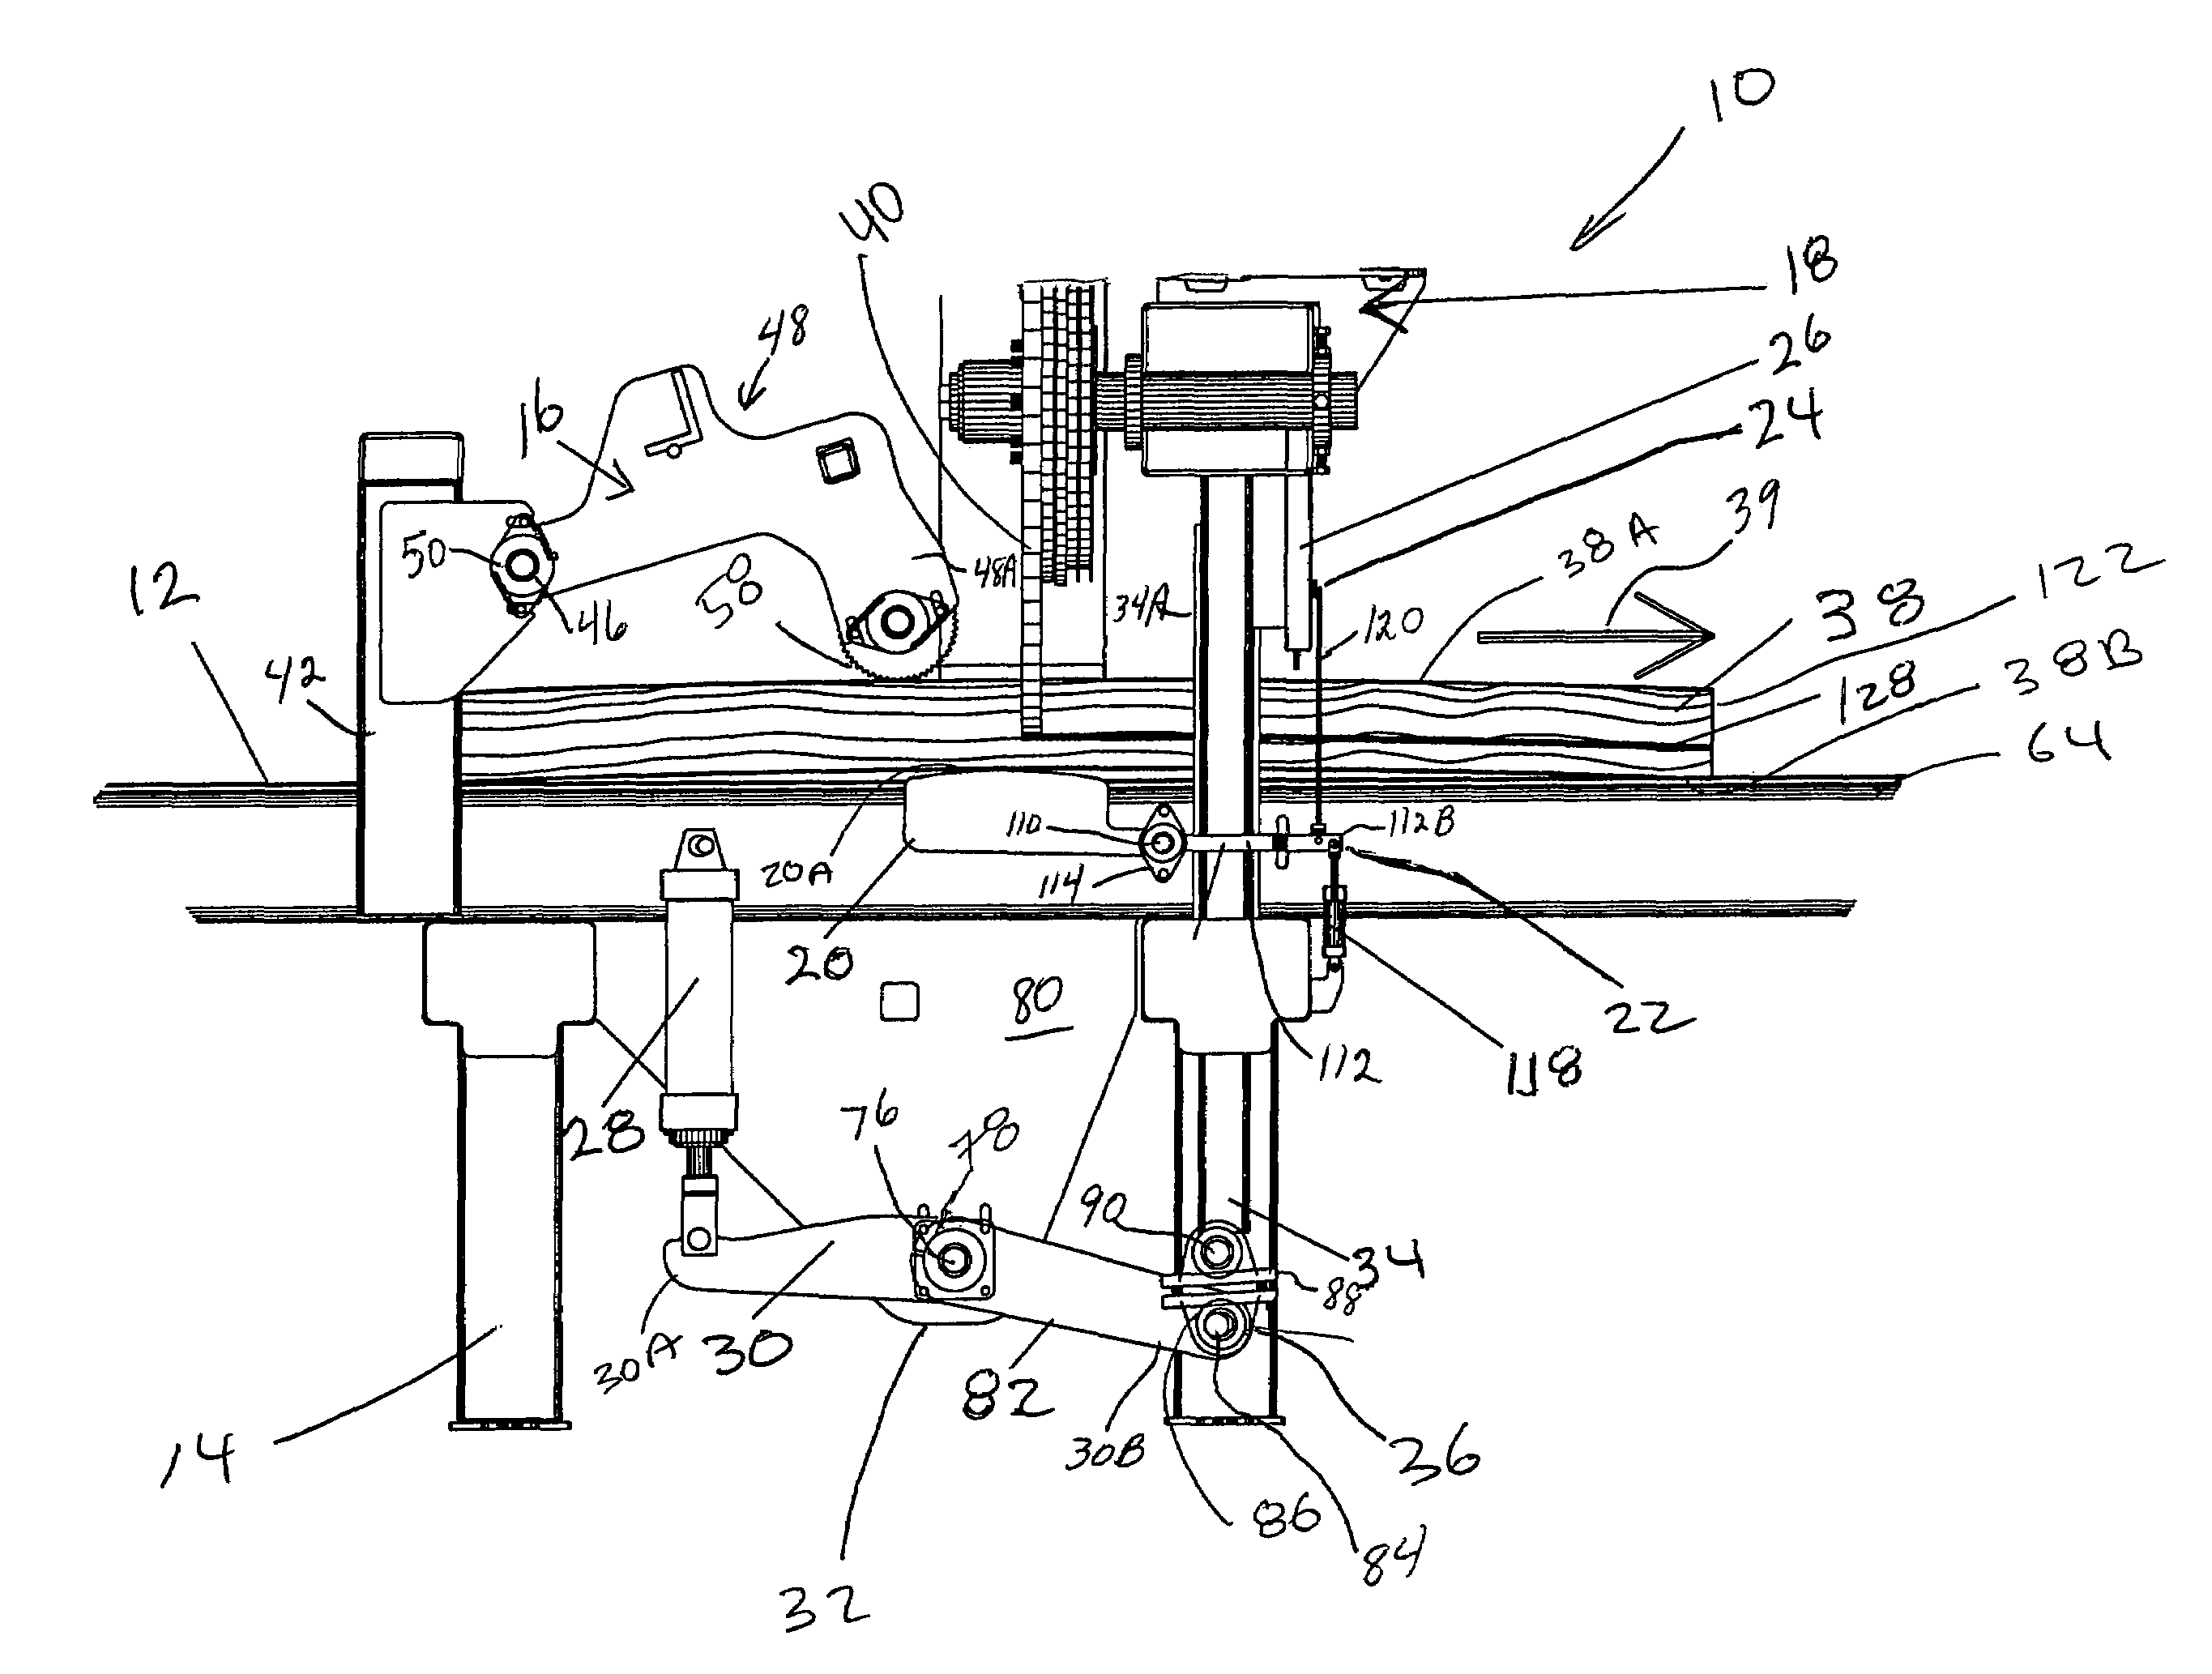 Horizontal curve sawing apparatus